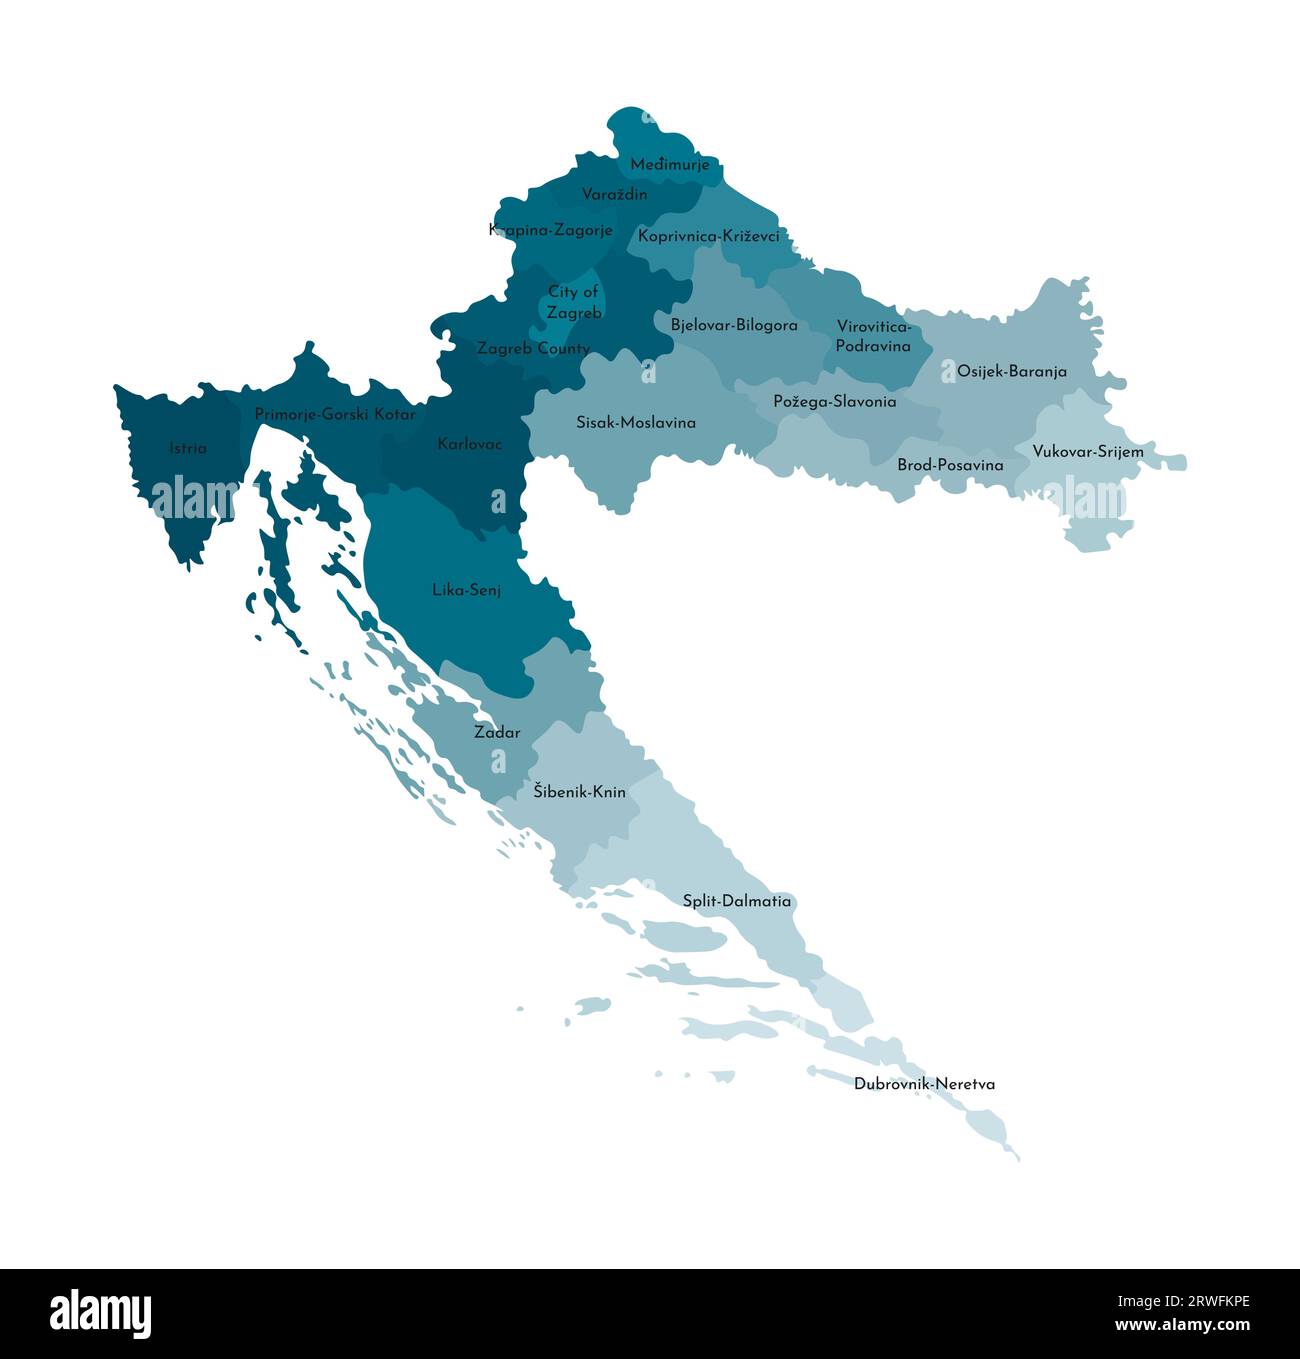 Vektor-isolierte Illustration einer vereinfachten Verwaltungskarte Kroatiens. Grenzen und Namen der Regionen. Farbenfrohe, khakifarbene Silhouetten. Stock Vektor